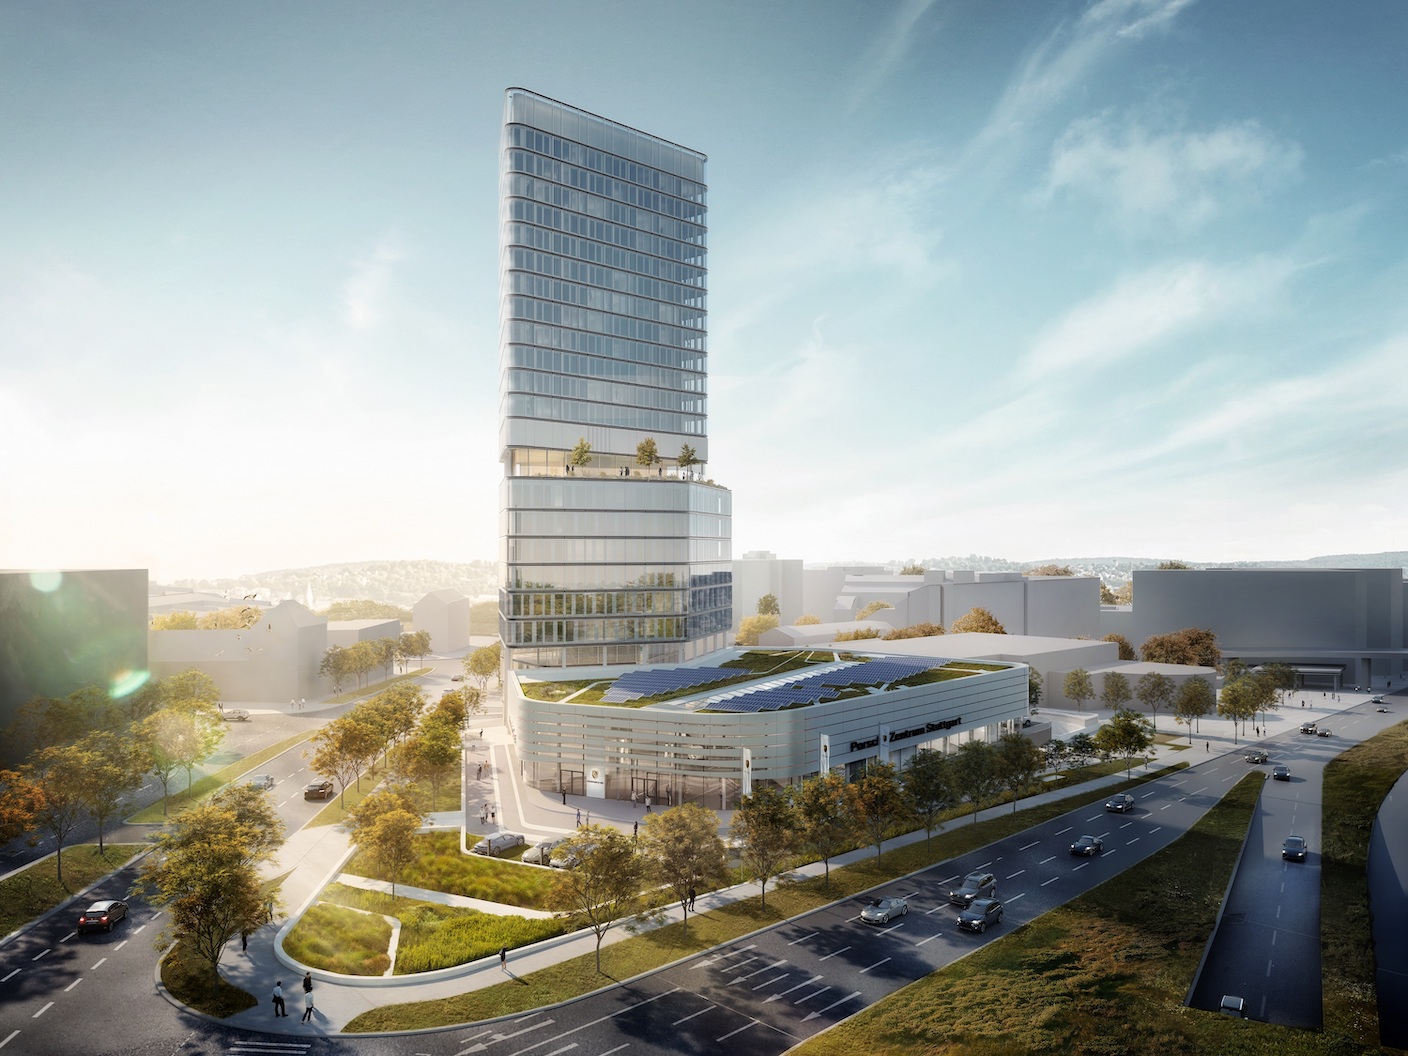 Bau des Porsche Design Tower und Porsche Zentrum Stuttgart läuft nach Plan